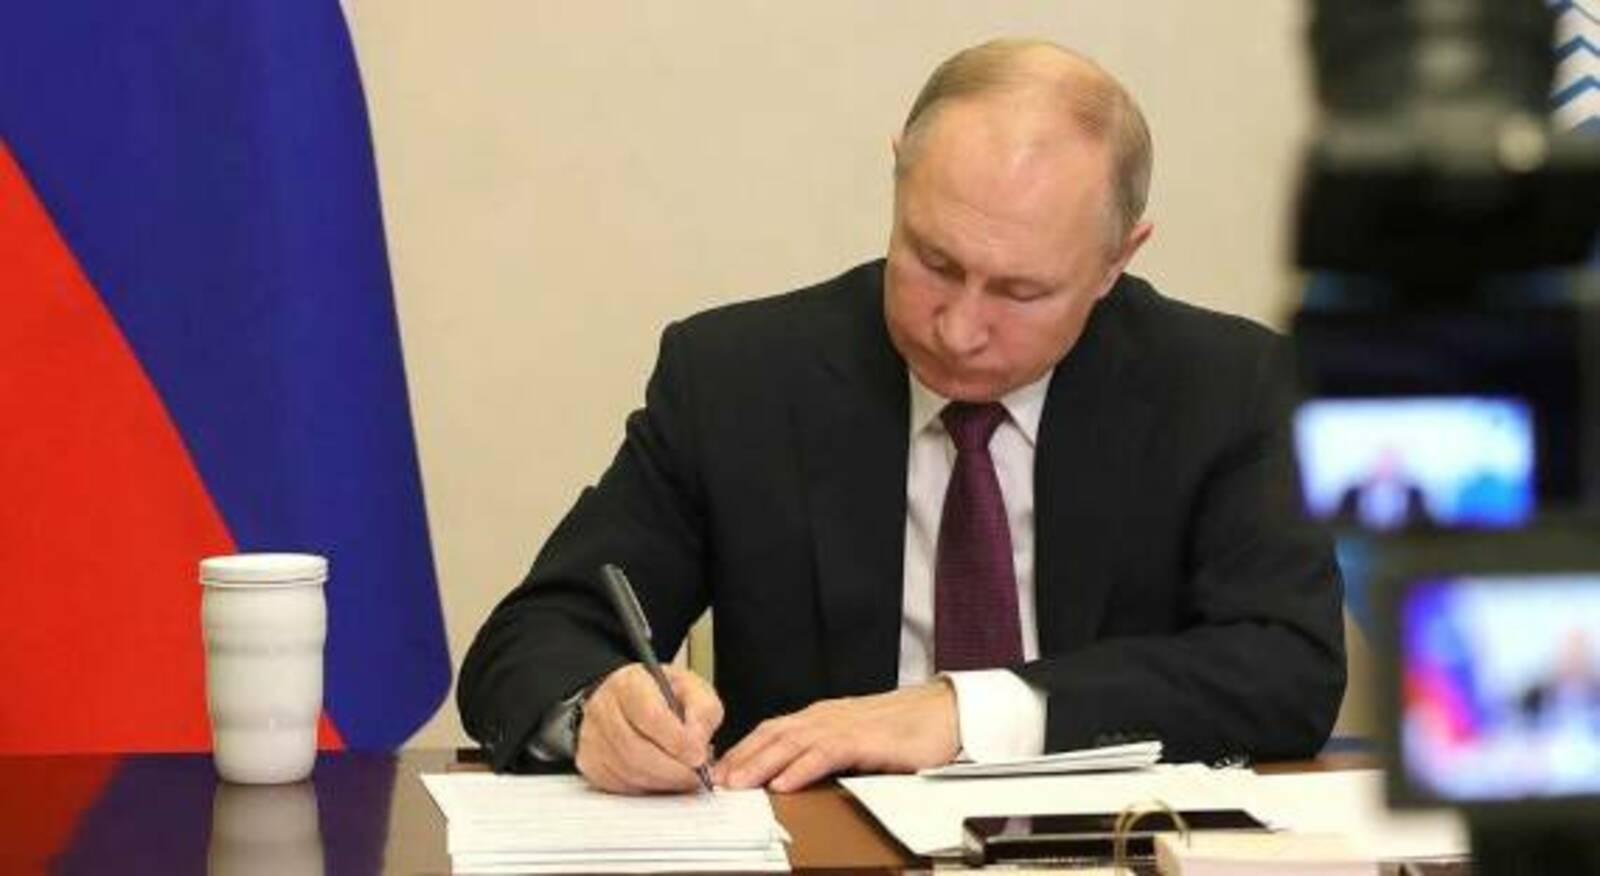 Путин подписал указ о единовременной выплате военнослужащим 195 000 рублей